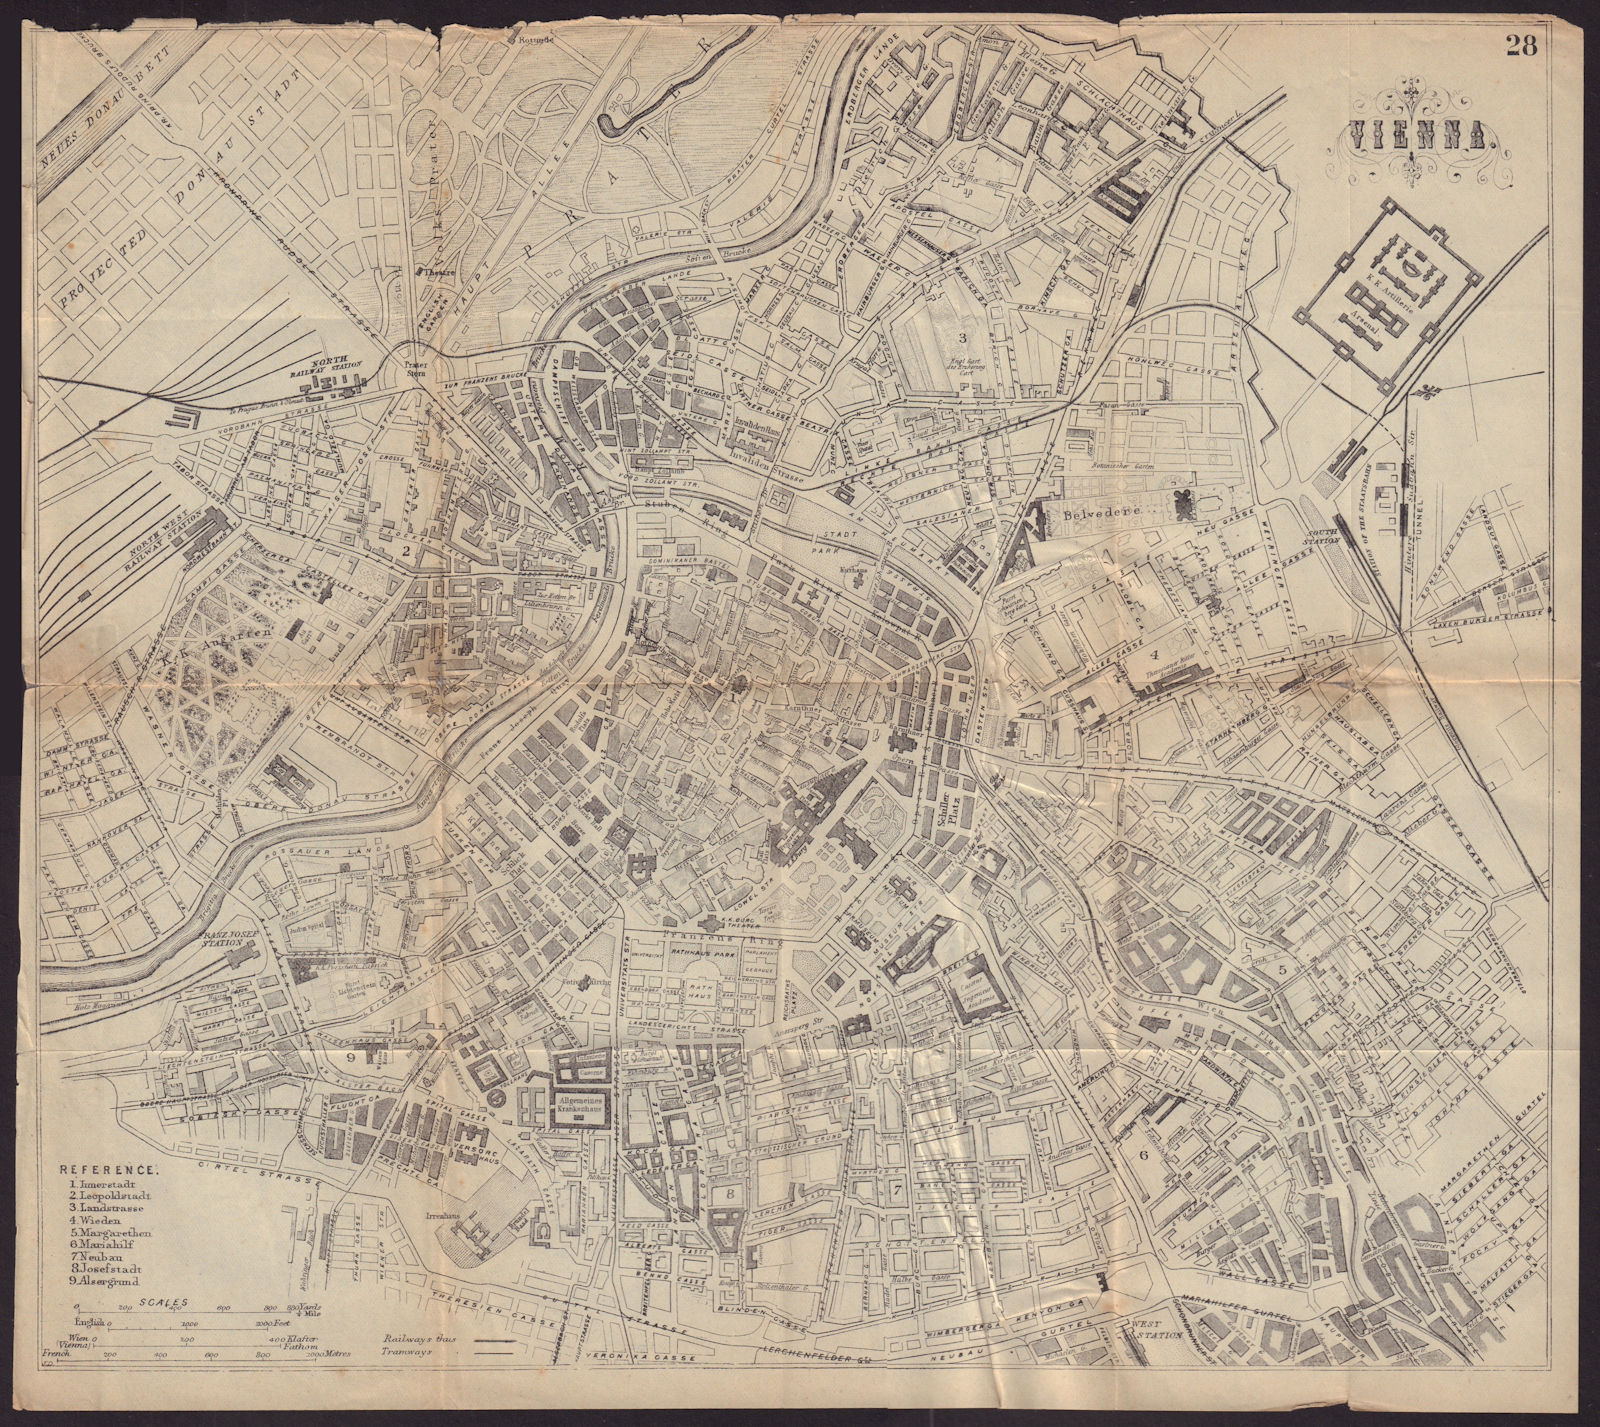 VIENNA WIEN antique town plan city map. Austria. BRADSHAW c1898 old